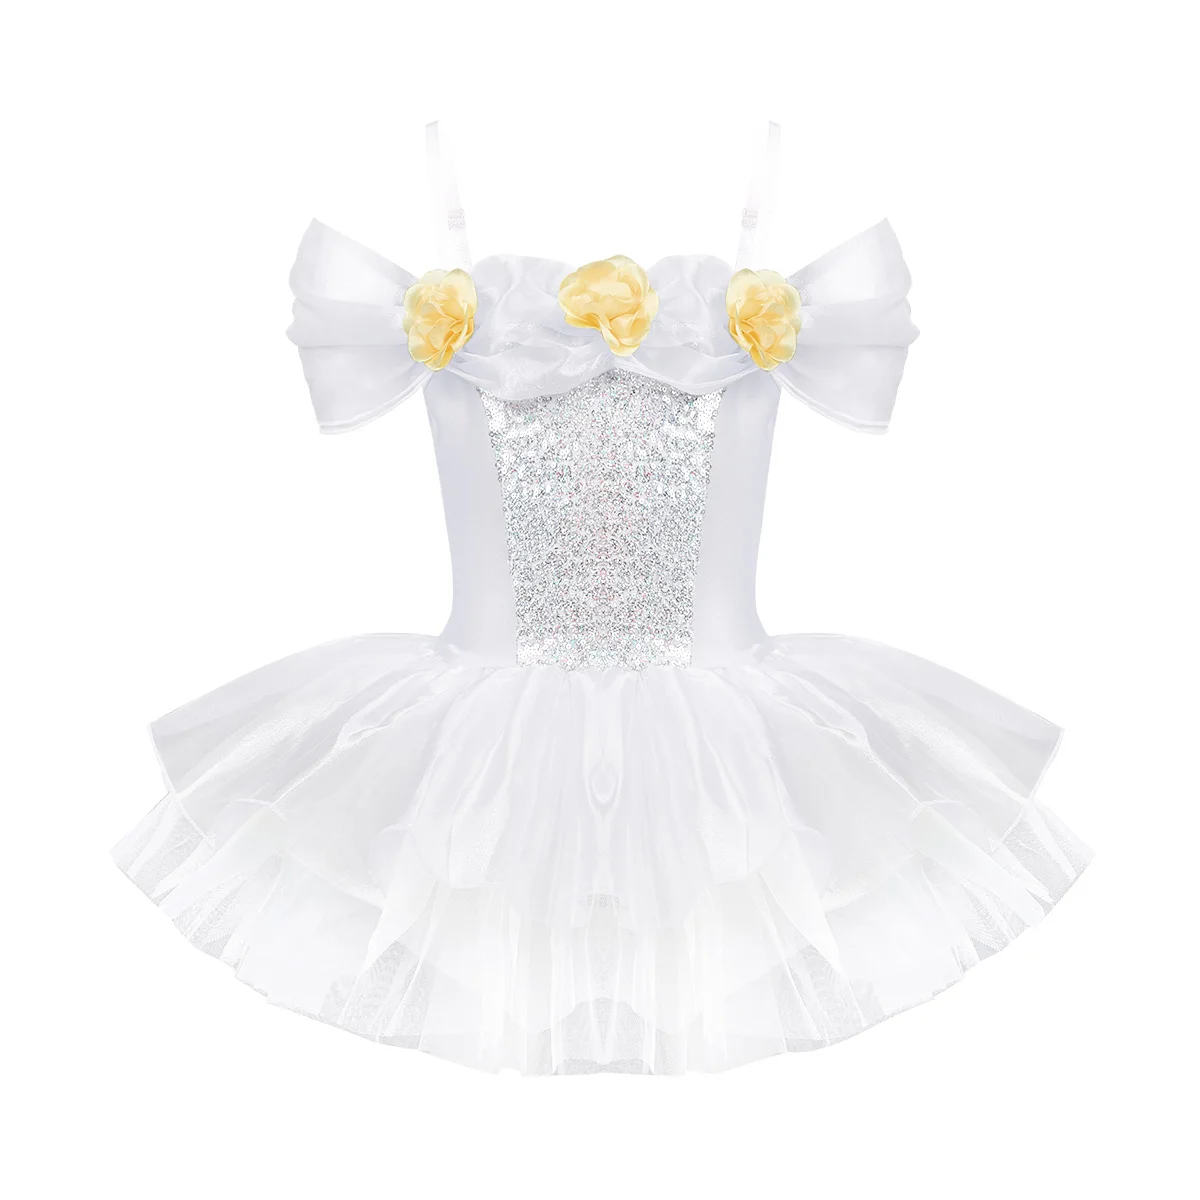 TiaoBug/балетное платье-пачка принцессы с блестками и открытыми плечами для девочек; гимнастическое трико балерины; детское платье для дня рождения - Цвет: White